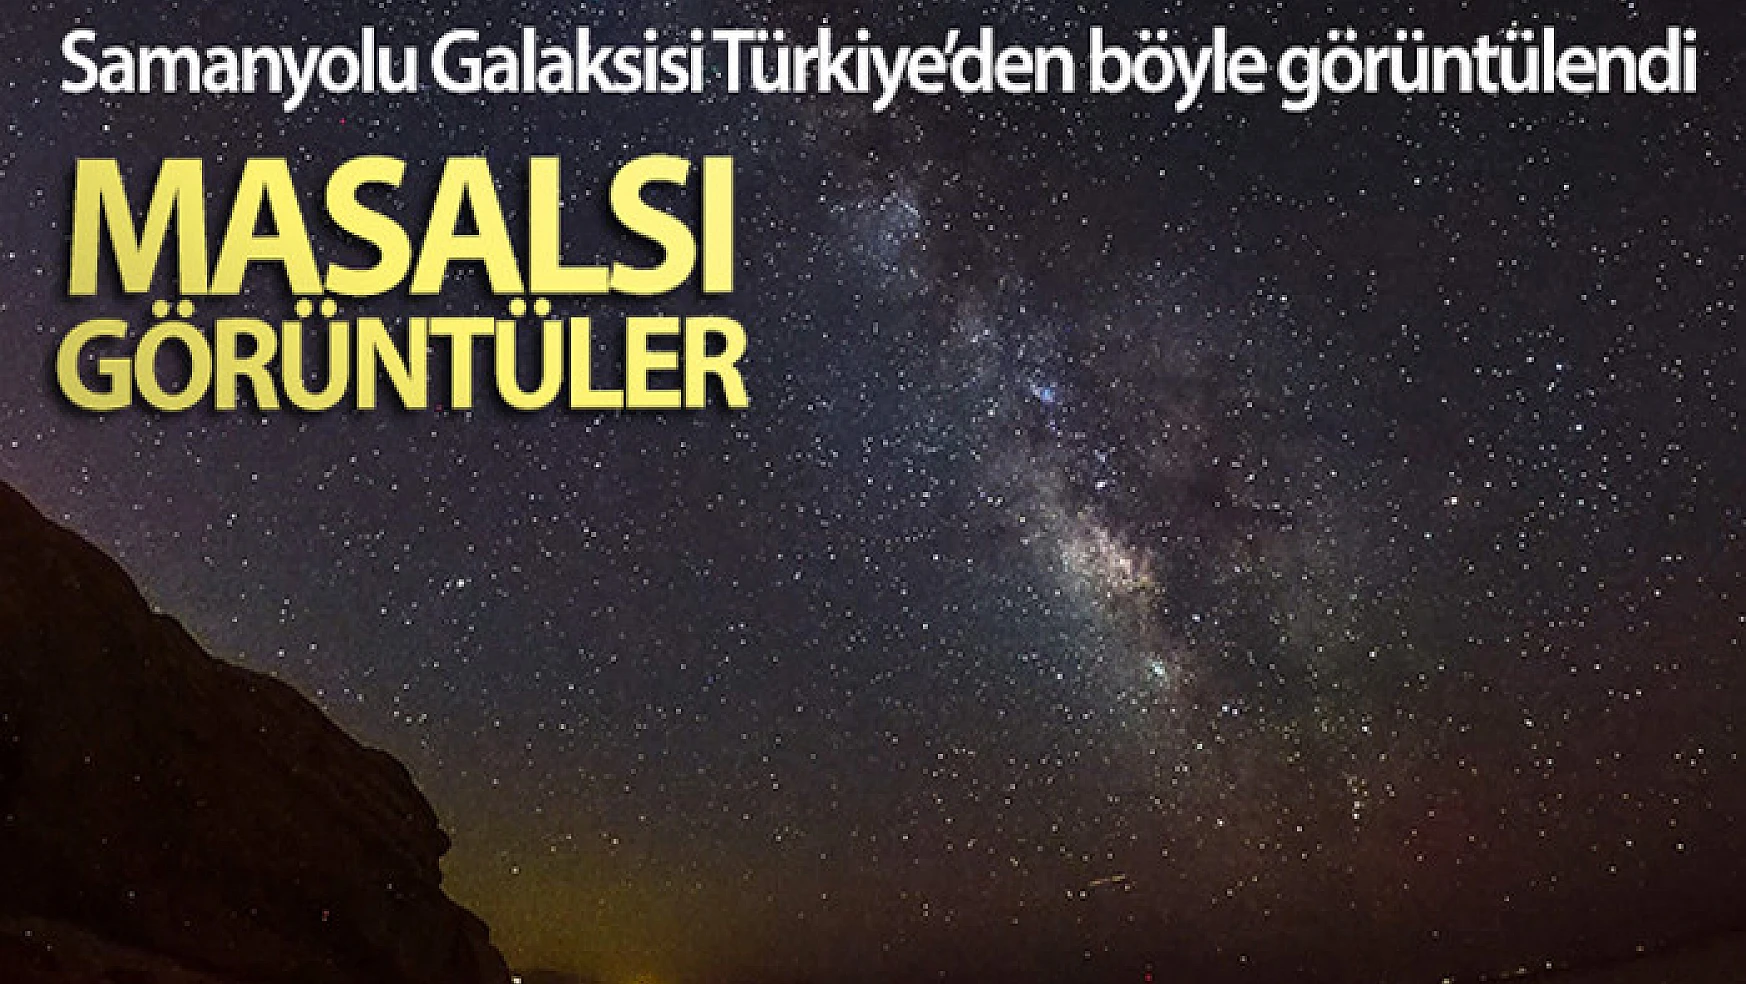 Samanyolu Galaksisi Türkiye'den böyle görüntülendi